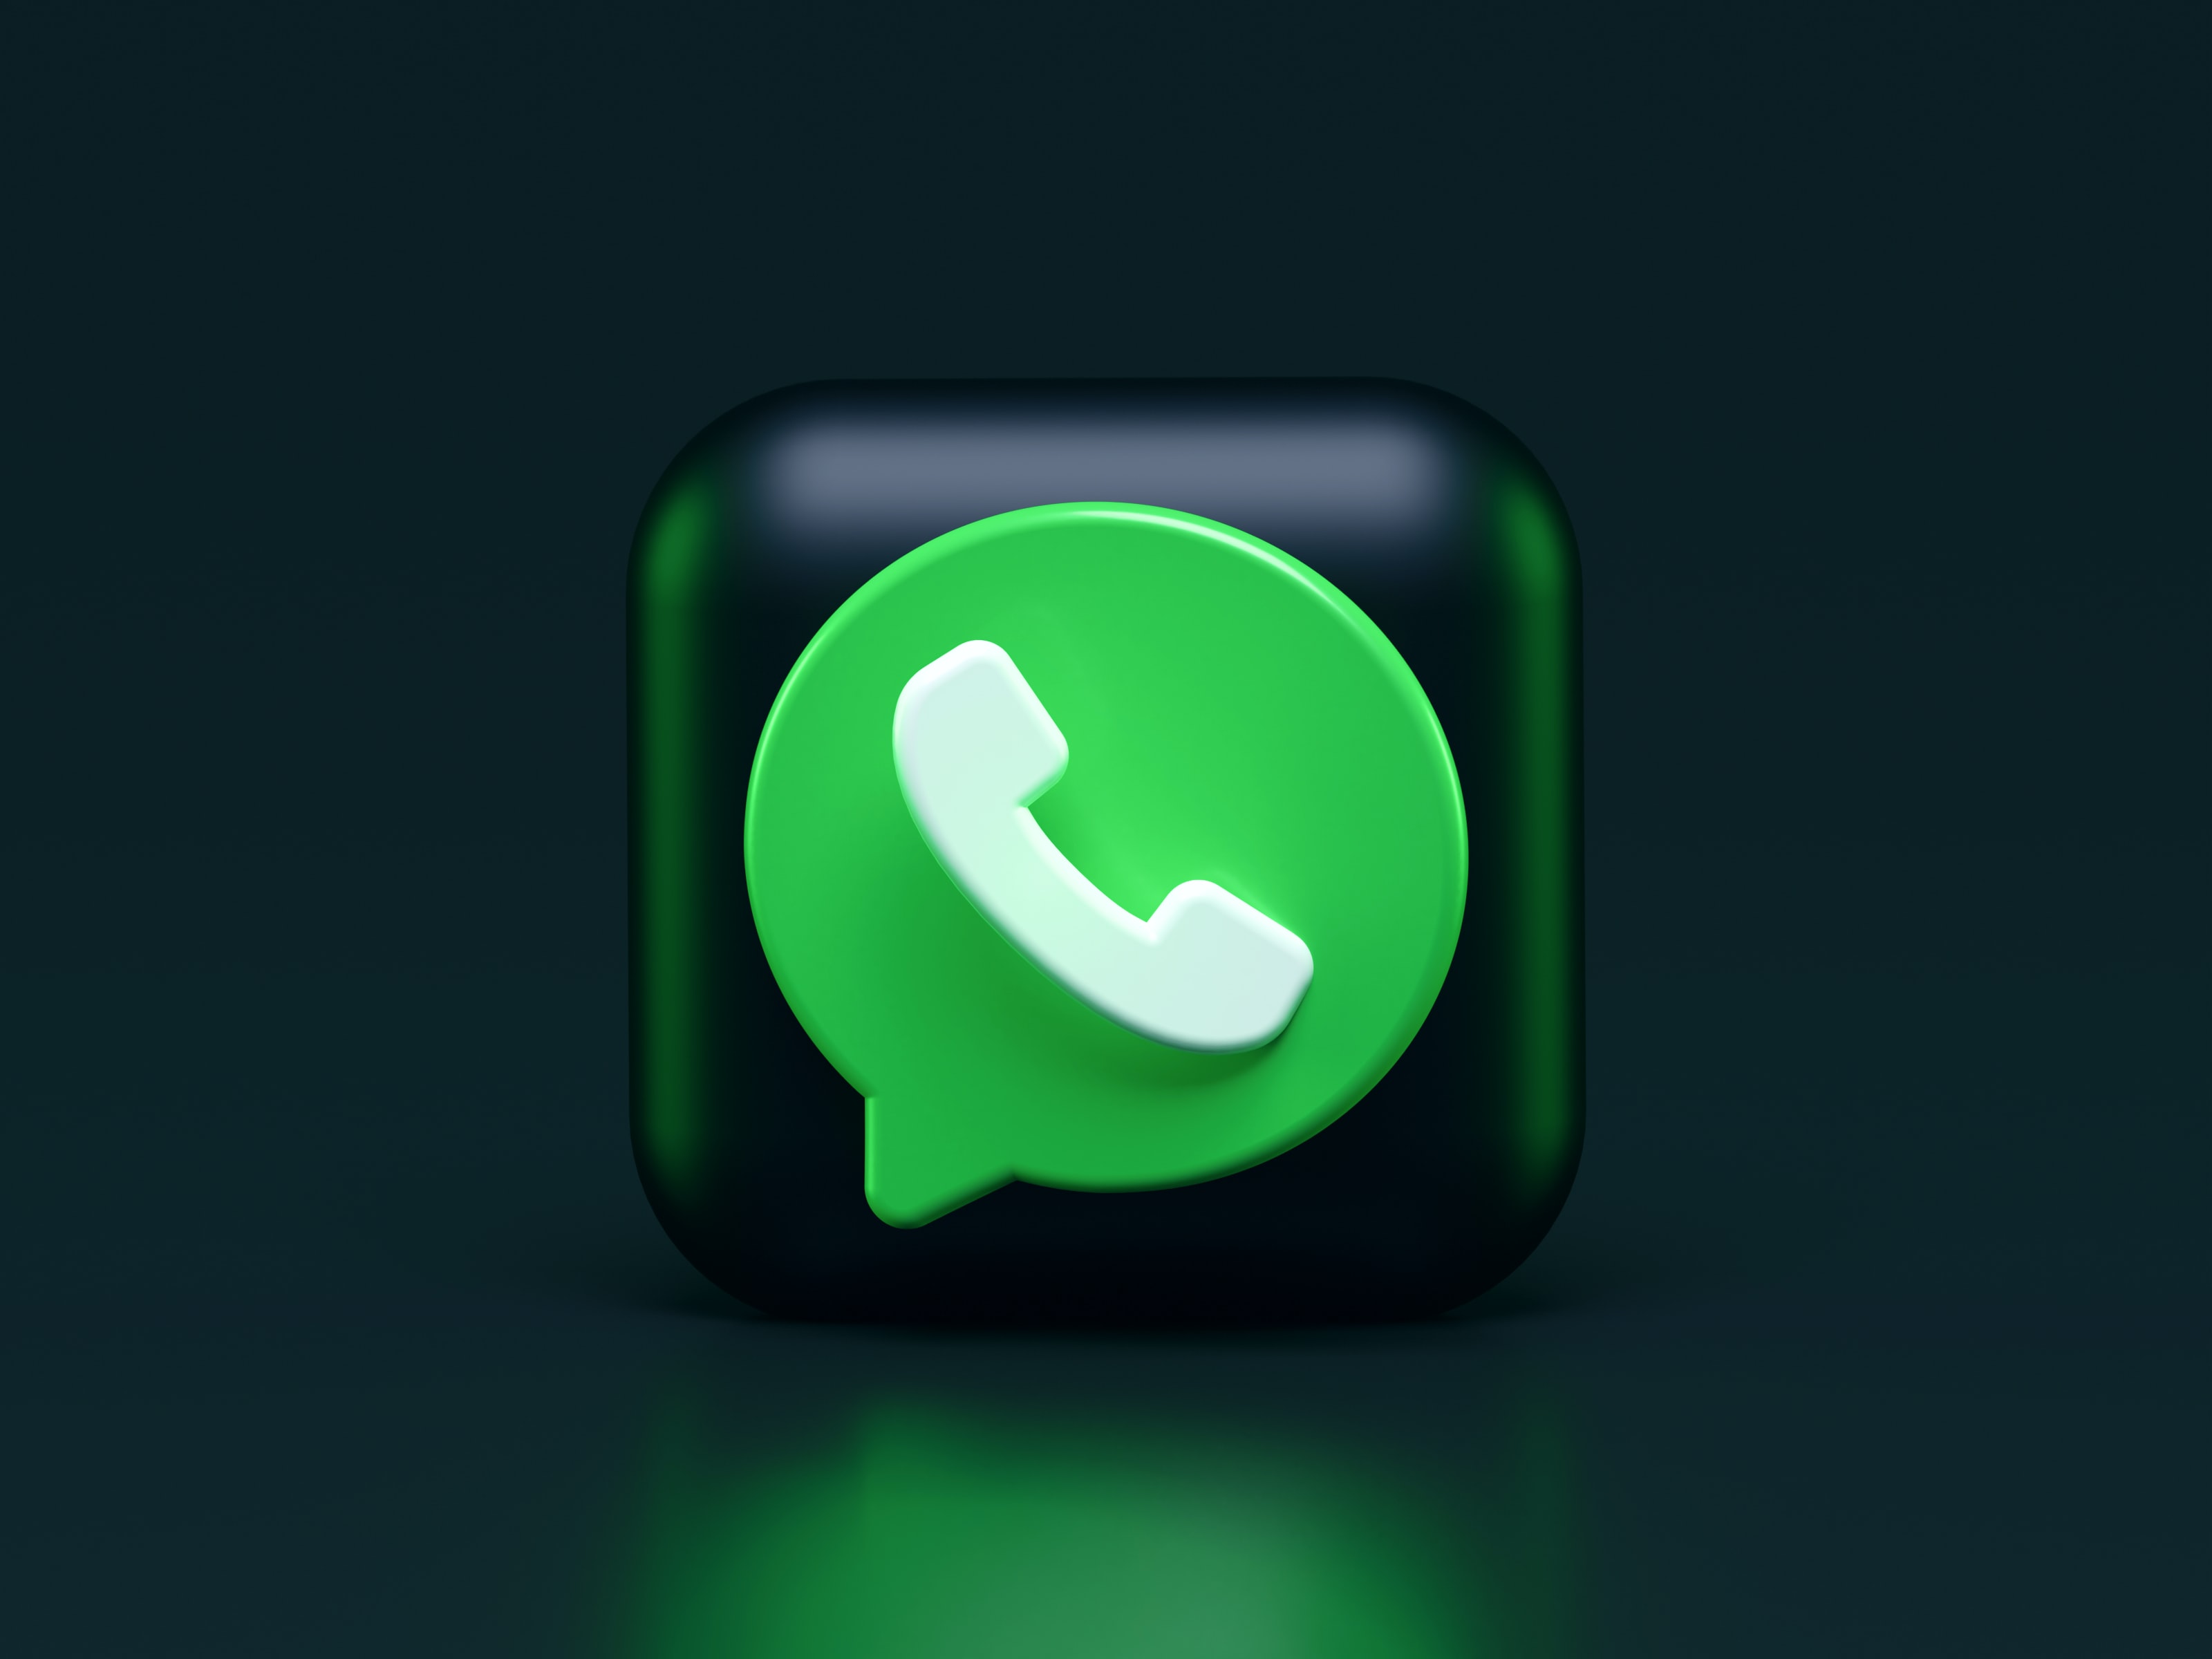 WhatsApp Web ofrece varias alternativas que favorecen la privacidad de sus usuarios. (Foto Prensa Libre: Unsplash)